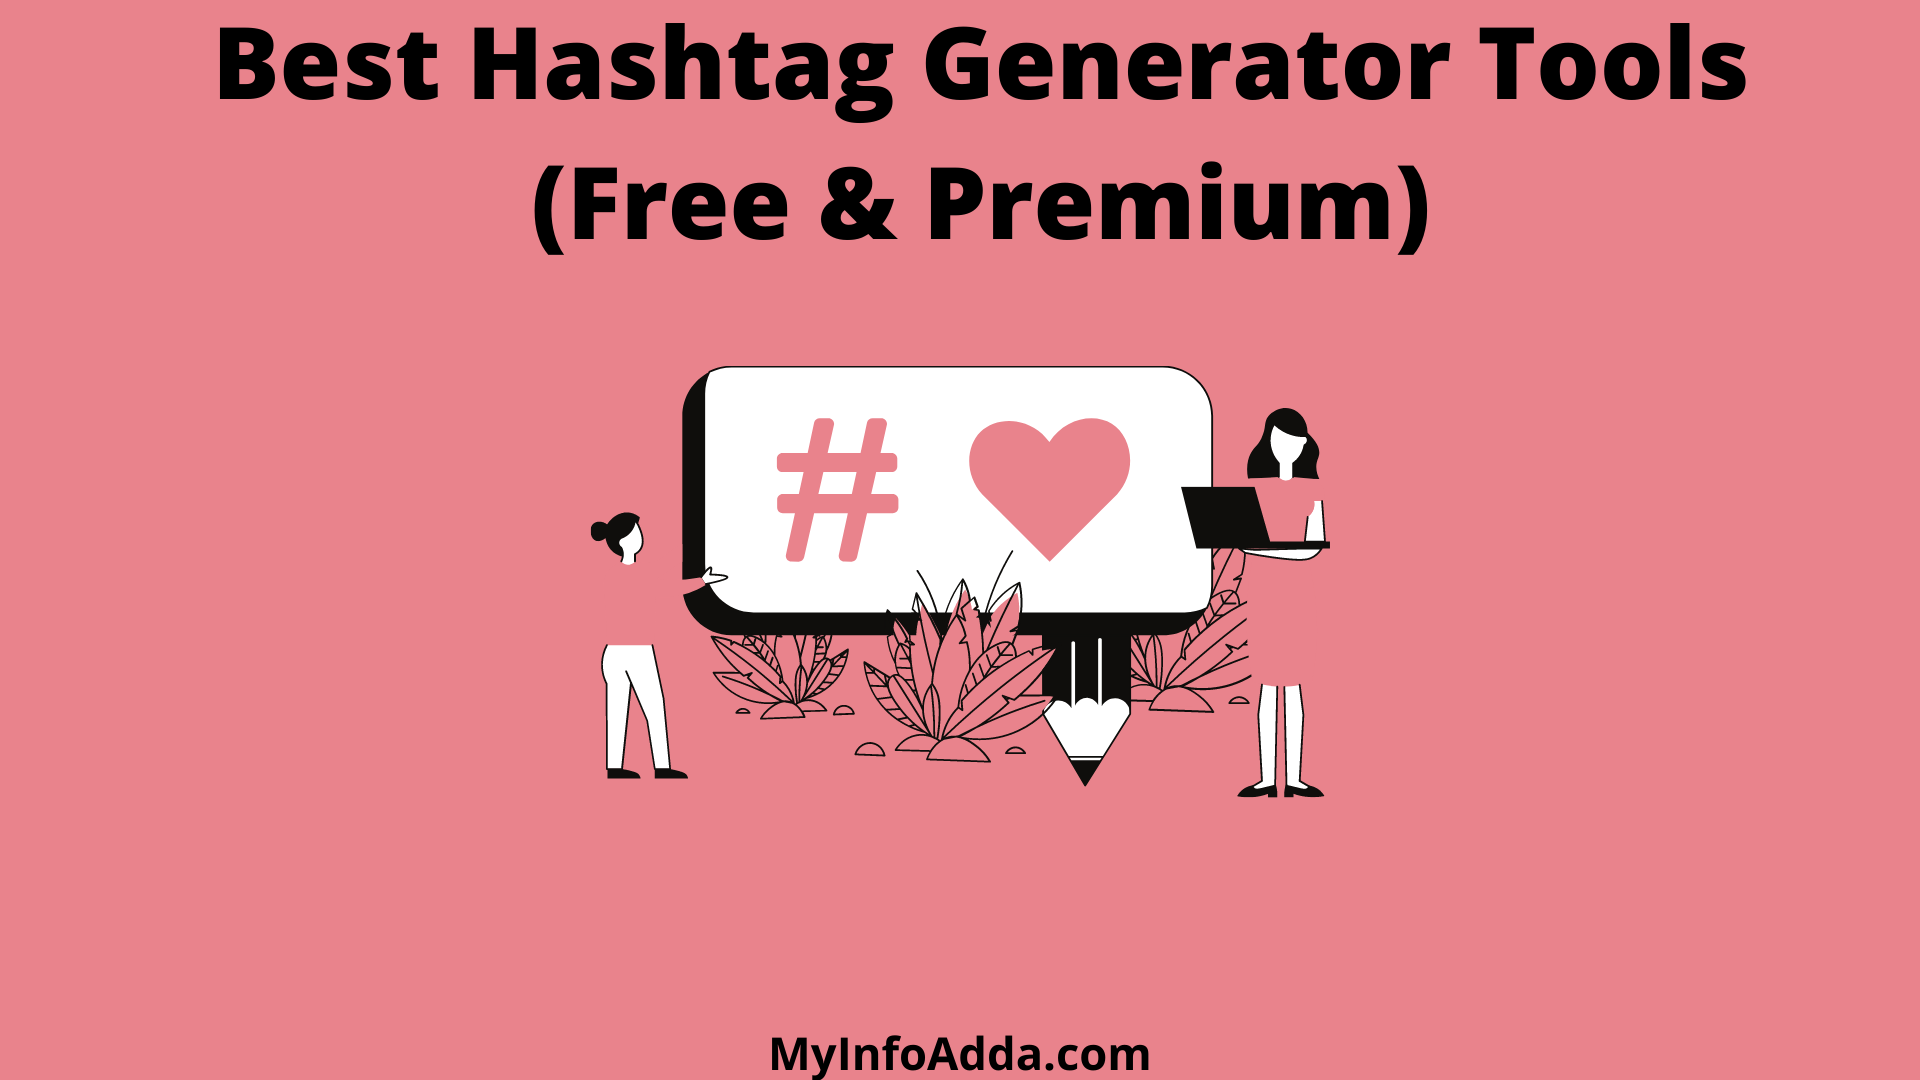 Best Hashtag Generator Tools Free & Premium